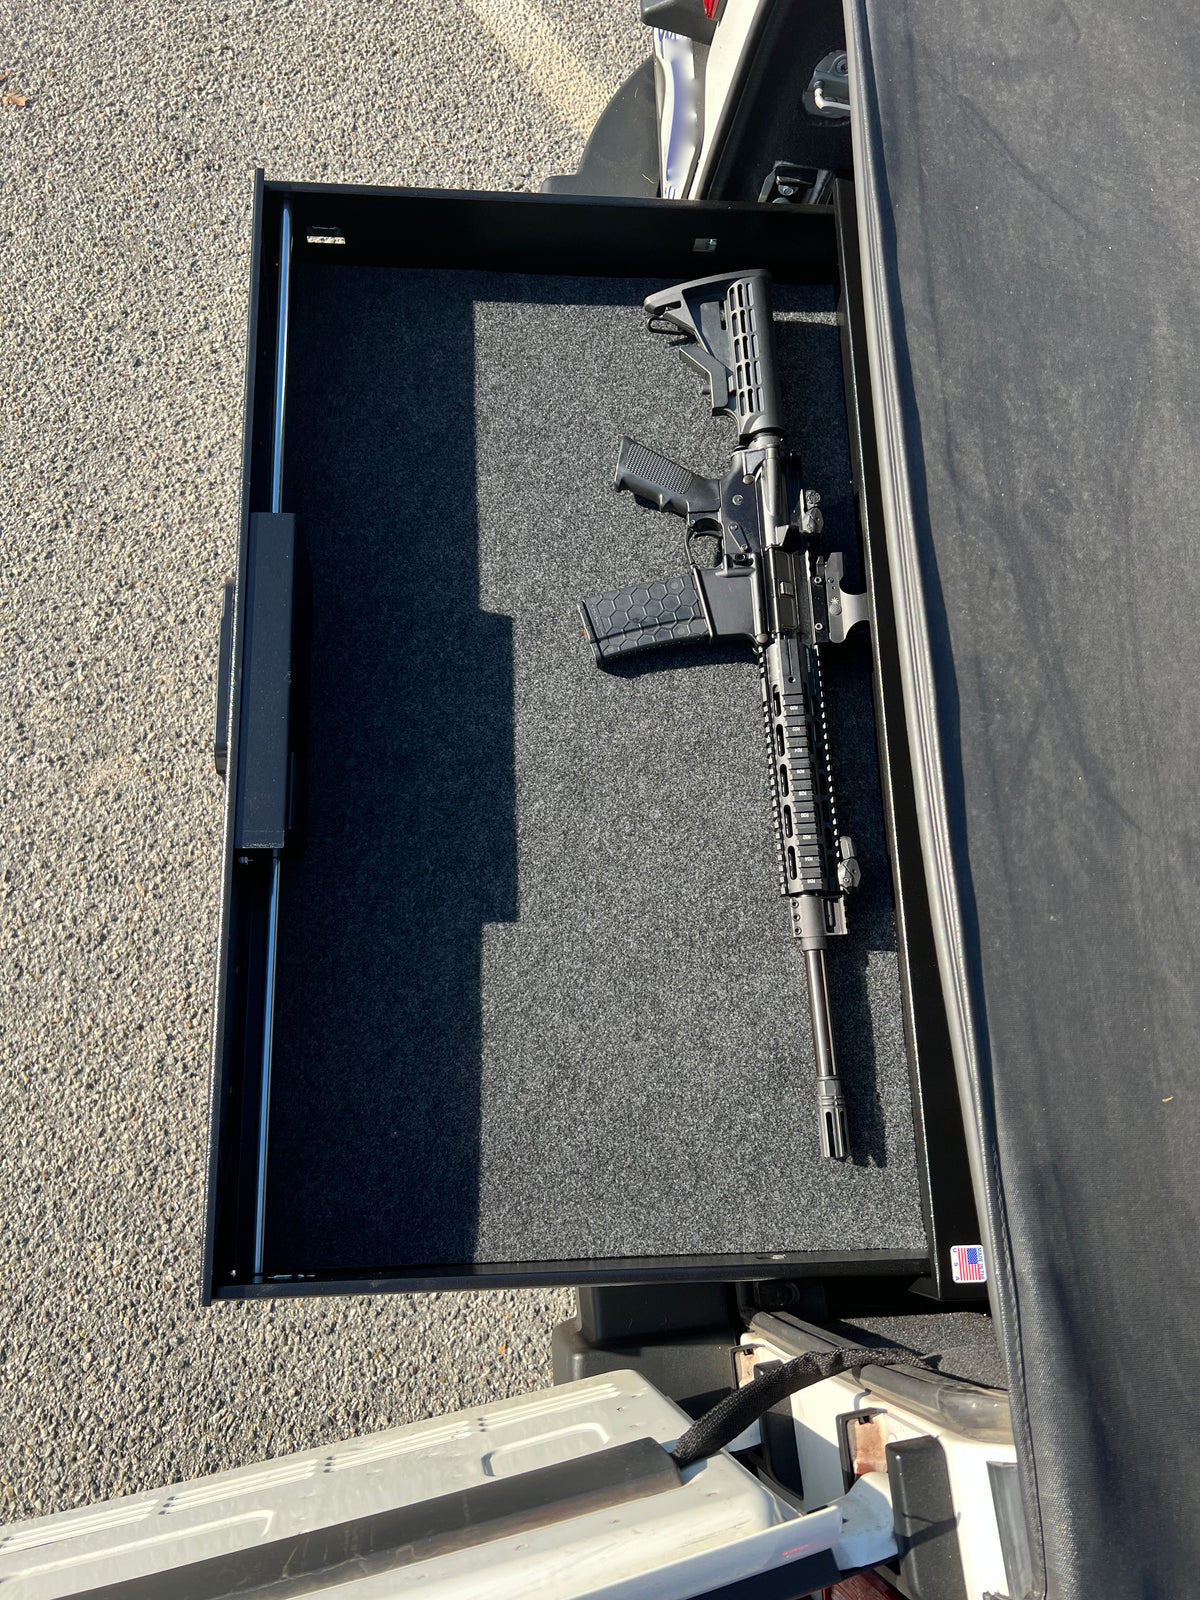 Monster Vault Compact Vehicle Gun Safe